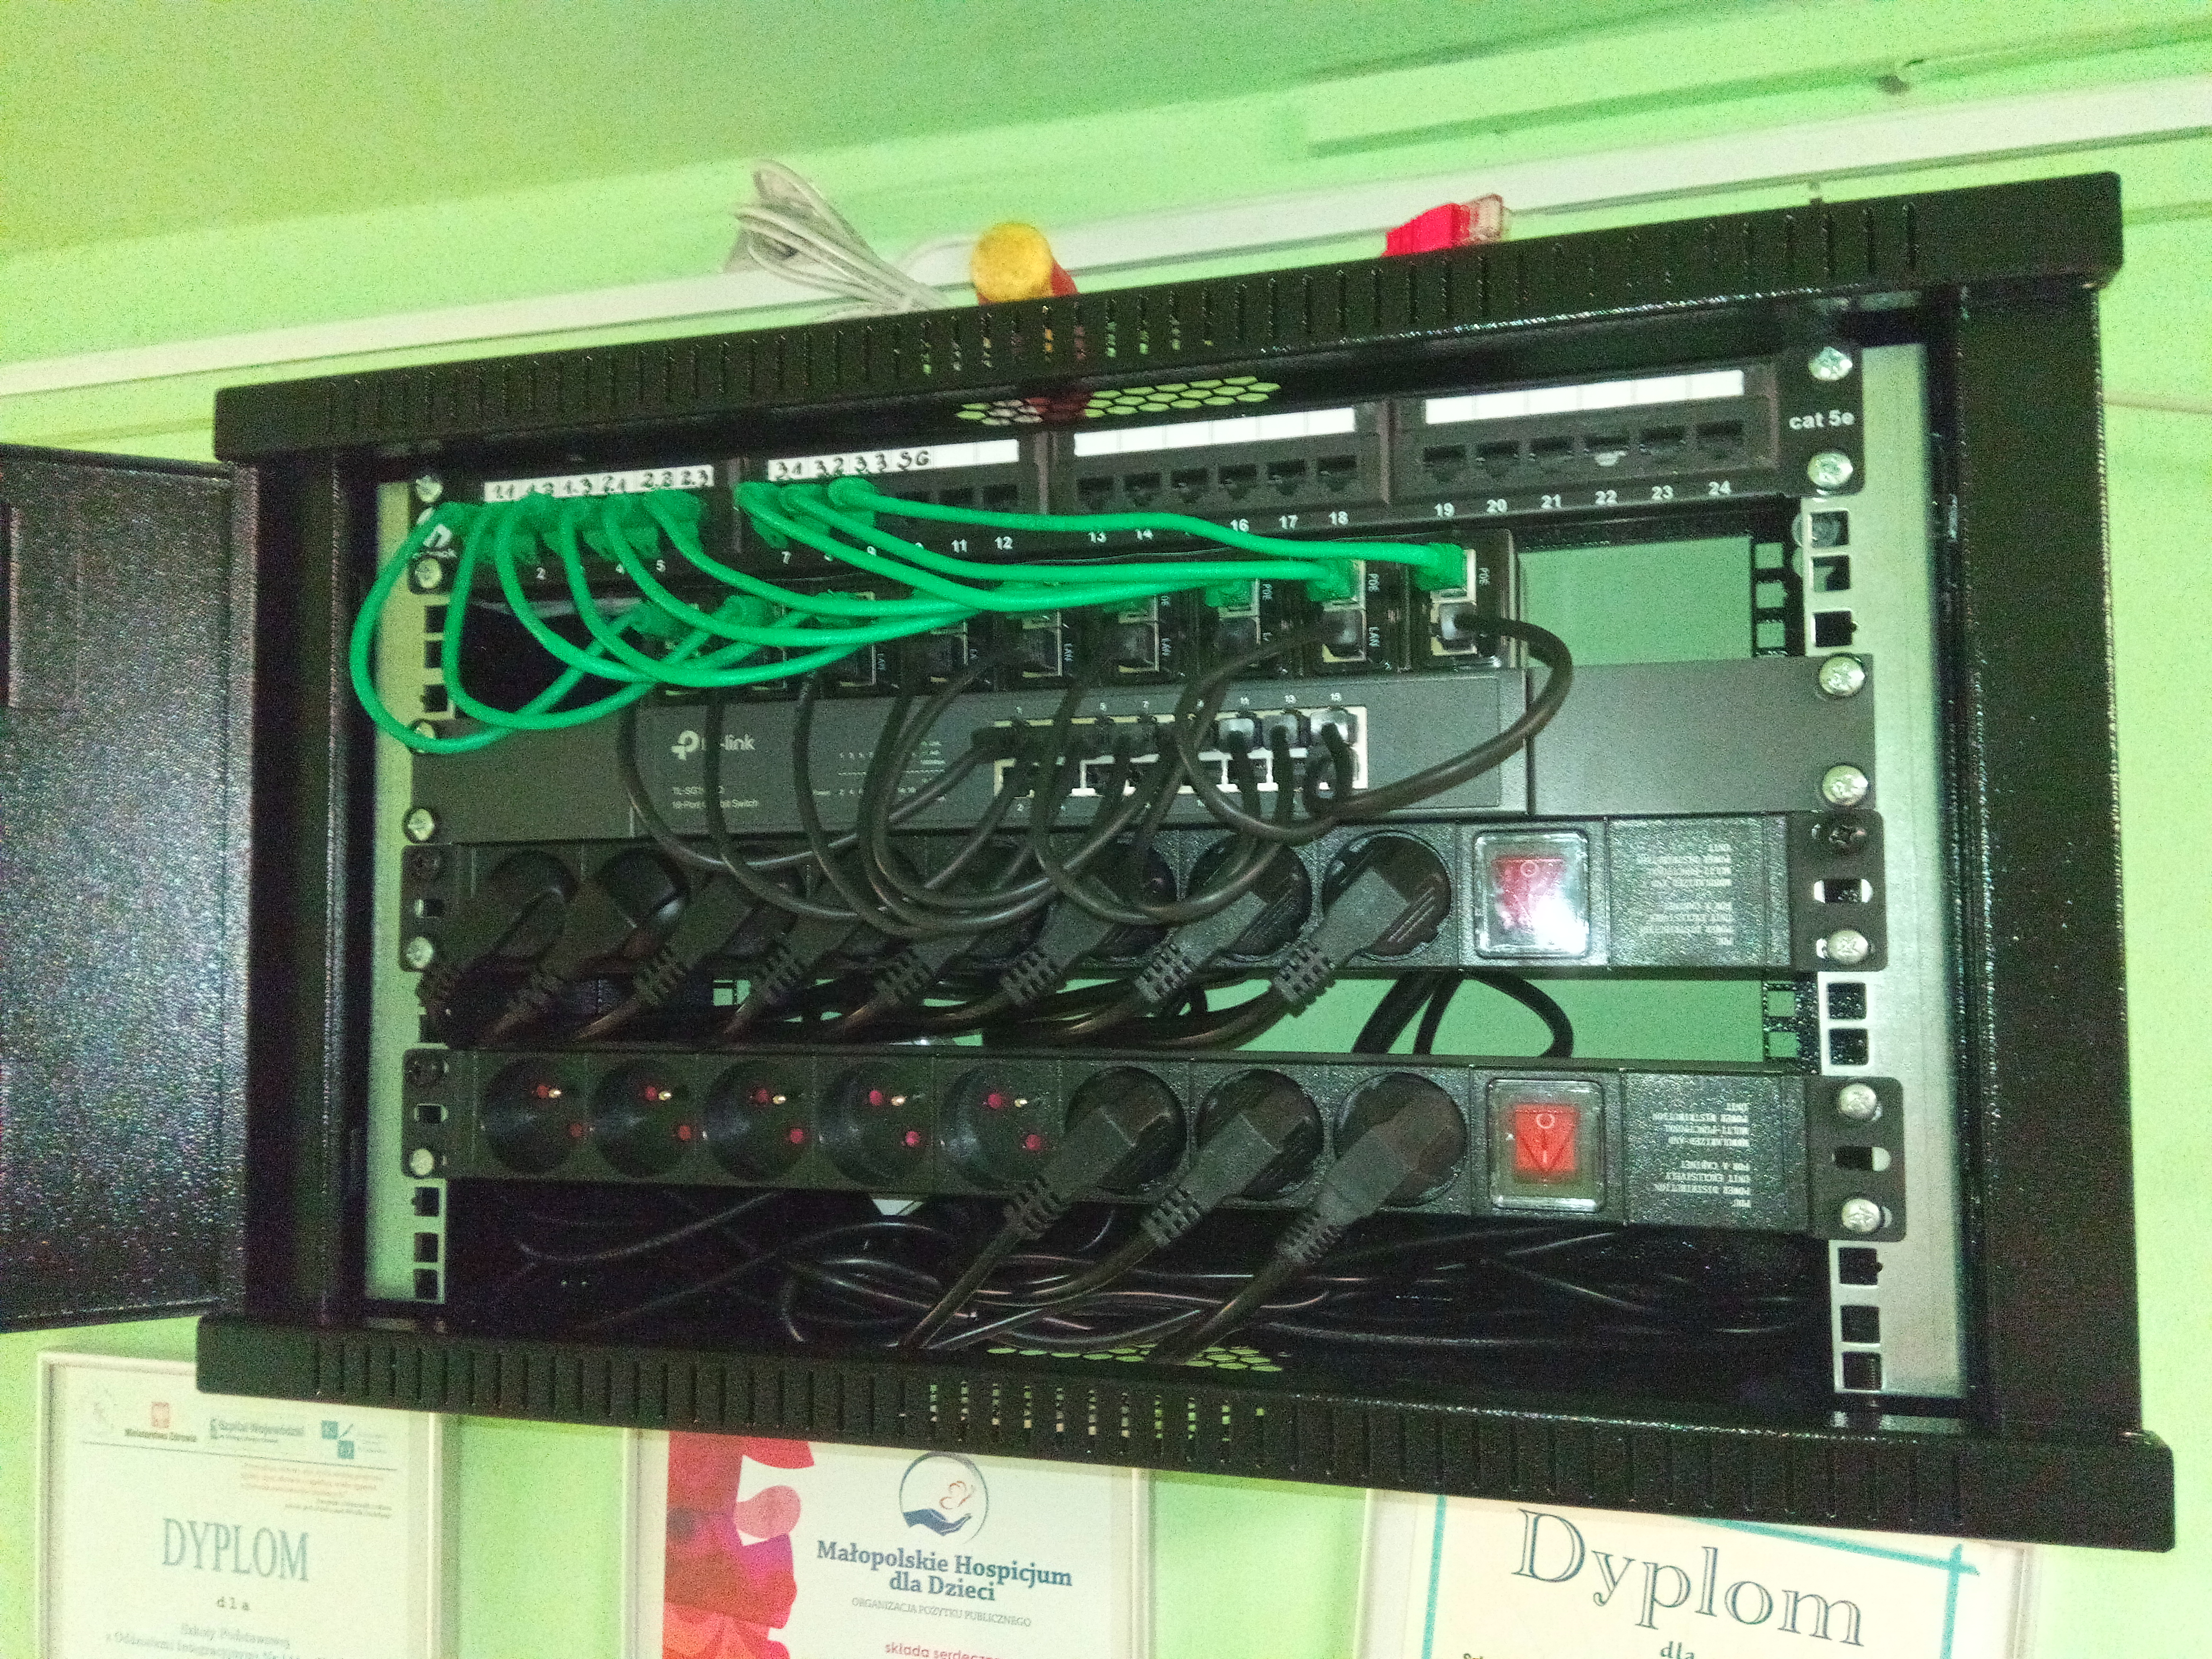 Szafa RACK - urządzenia sieciowe i zasilanie sieci WIFI w całym budynku szkoły